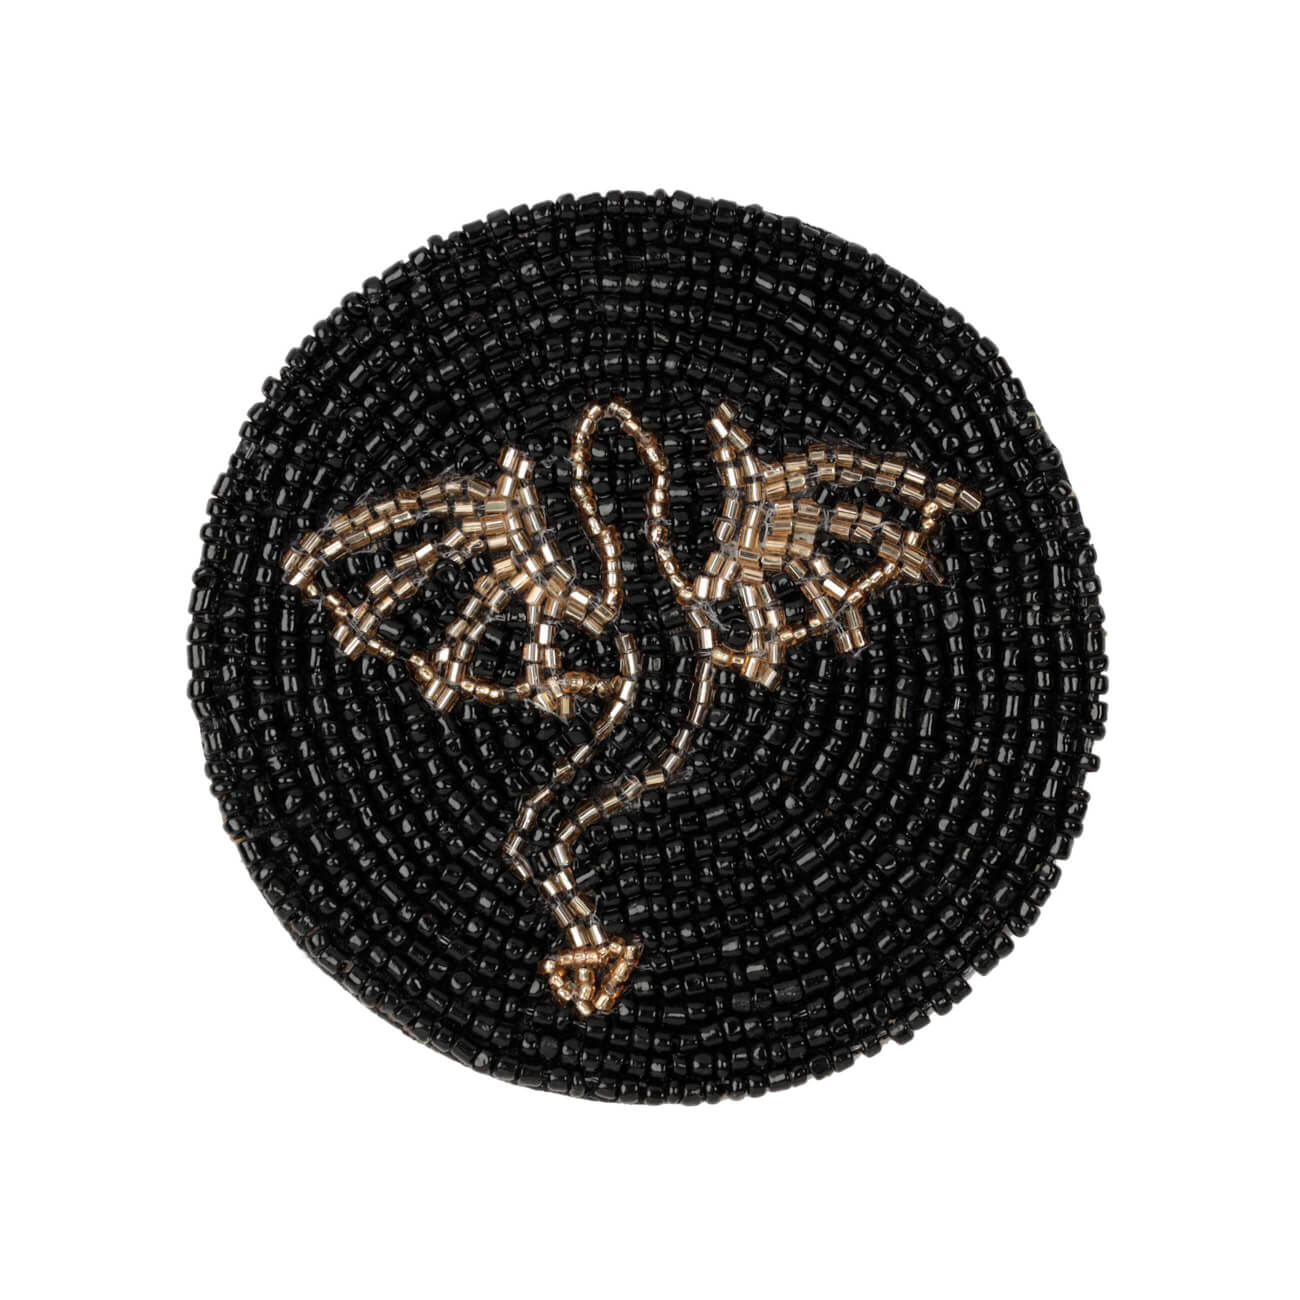 Подставка под кружку, 10 см, бисер, круглая, черная, Дракон, Art beads изображение № 1